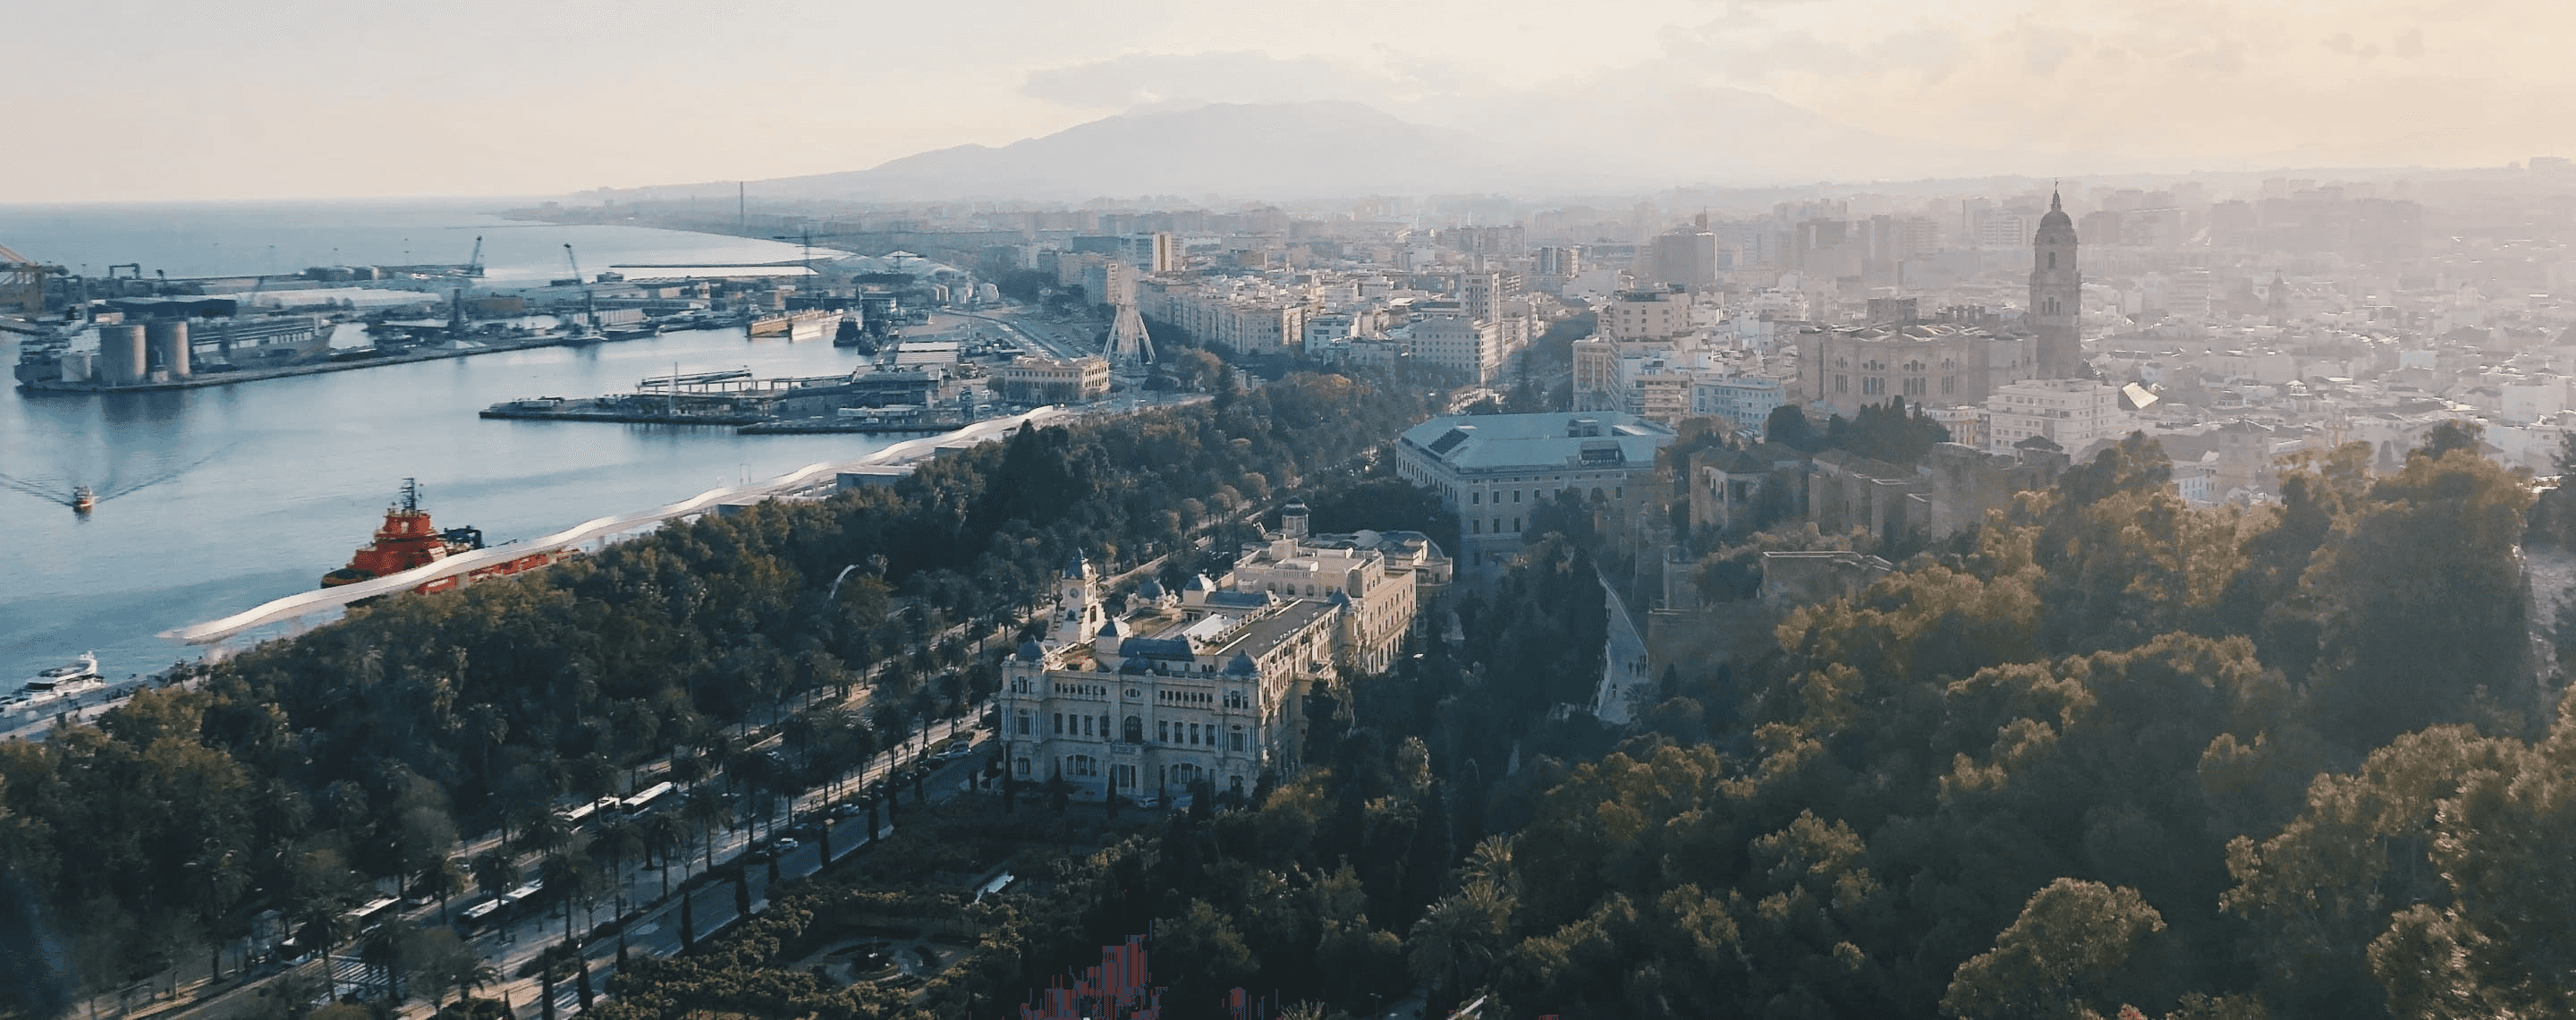 Panoramablick auf die spanische Stadt Malaga